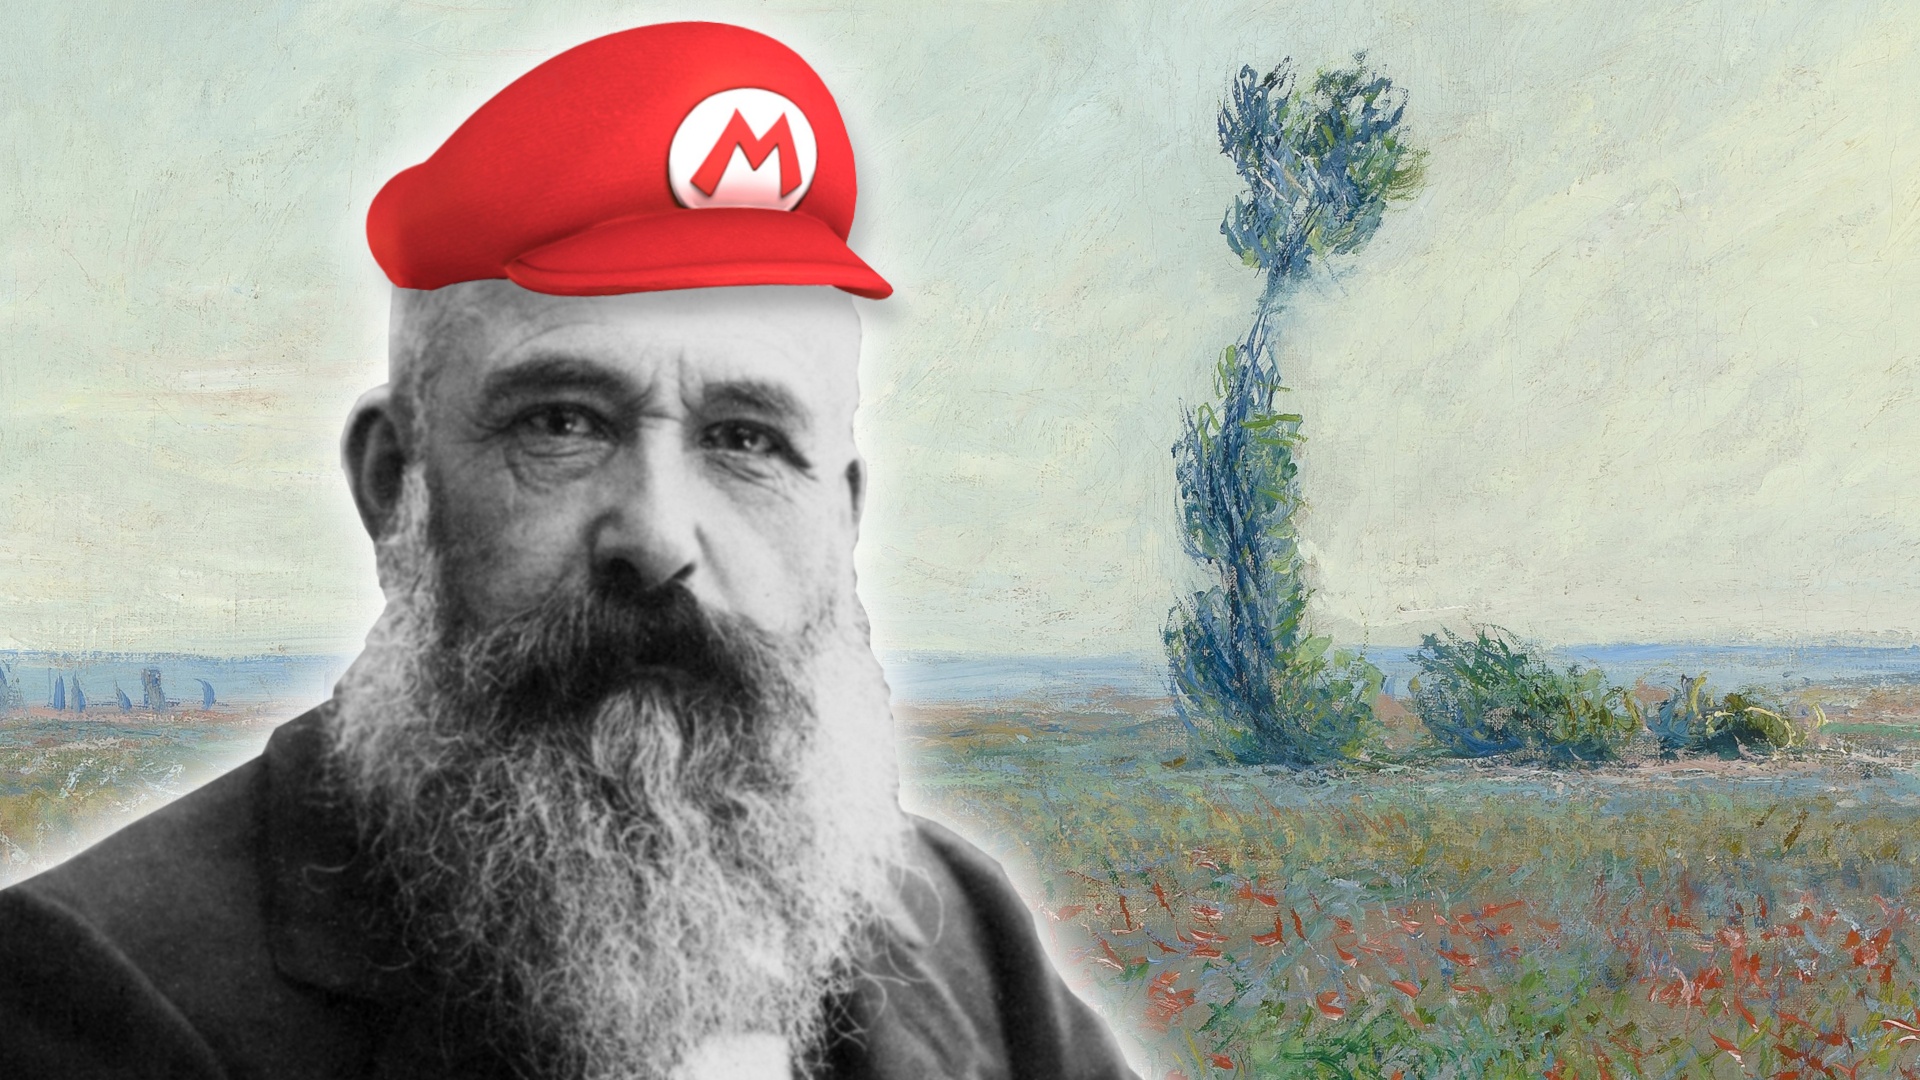 #Wenn Super Mario auf Monet trifft: KI erschafft neue Kunst, aber könnt ihr sie richtig zuordnen?